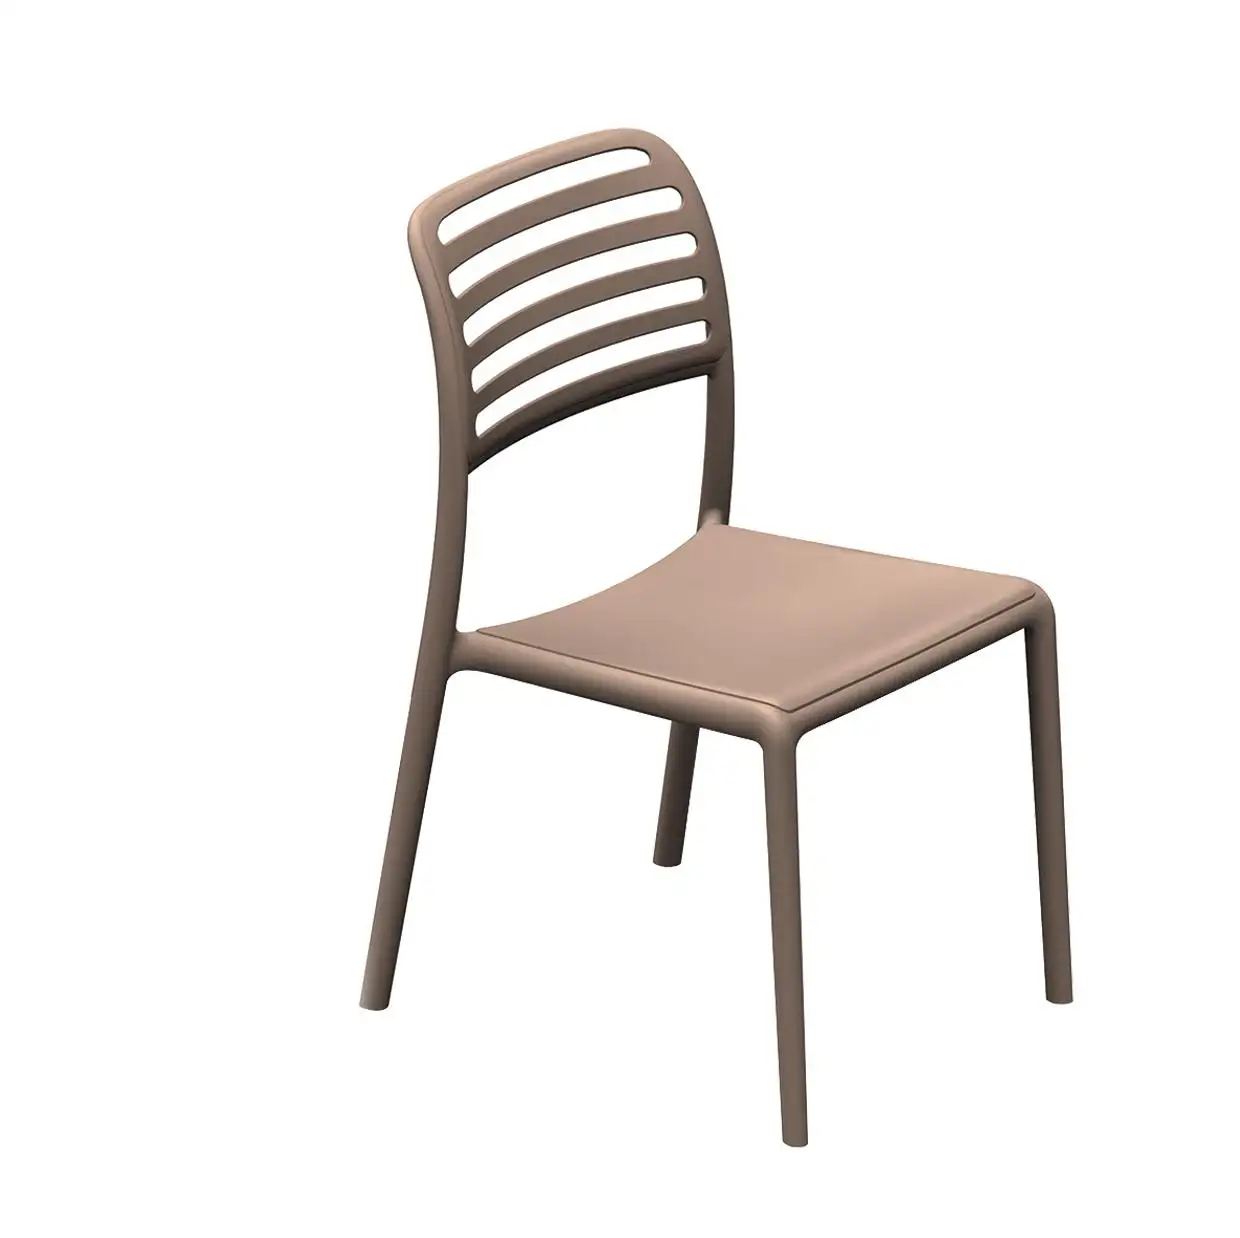 Fabrika fiyat modern tasarım restoran zarif ucuz fiyat renkli plastik yemek sandalyesi